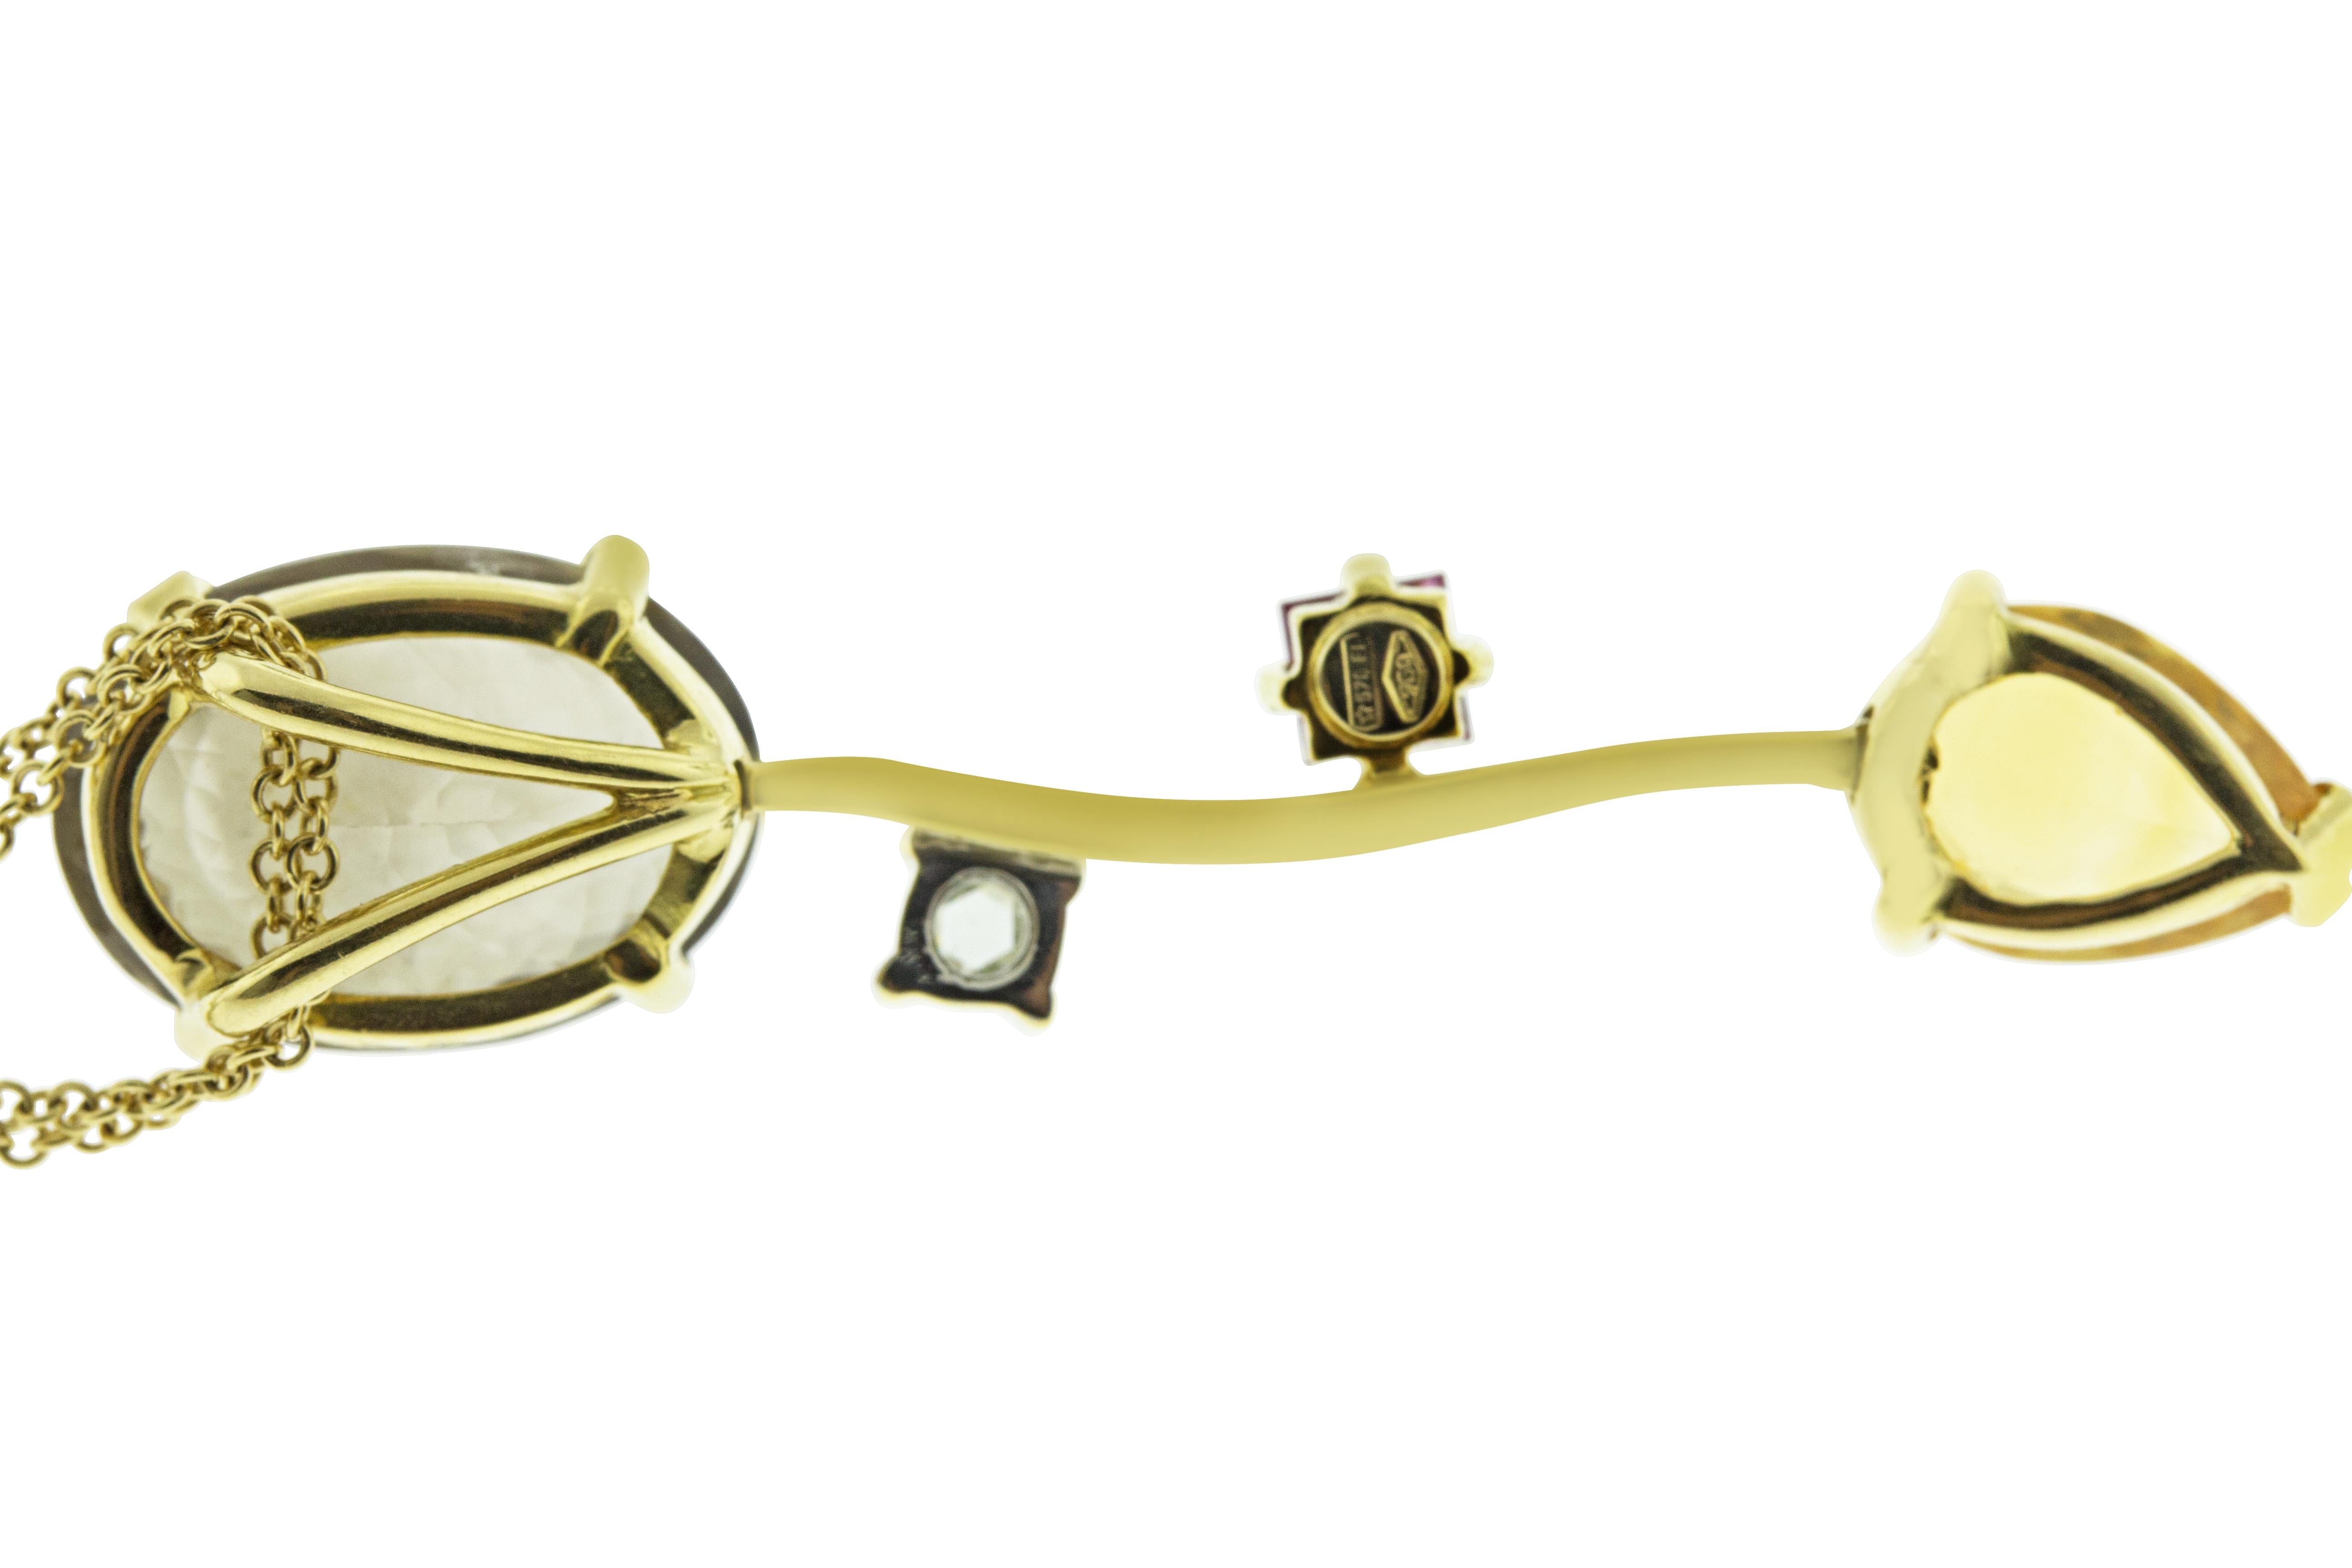 Contemporary Ponte Vecchio Gioielli 18 Karat Yellow Gold Multi Gemstone Pendant Necklace